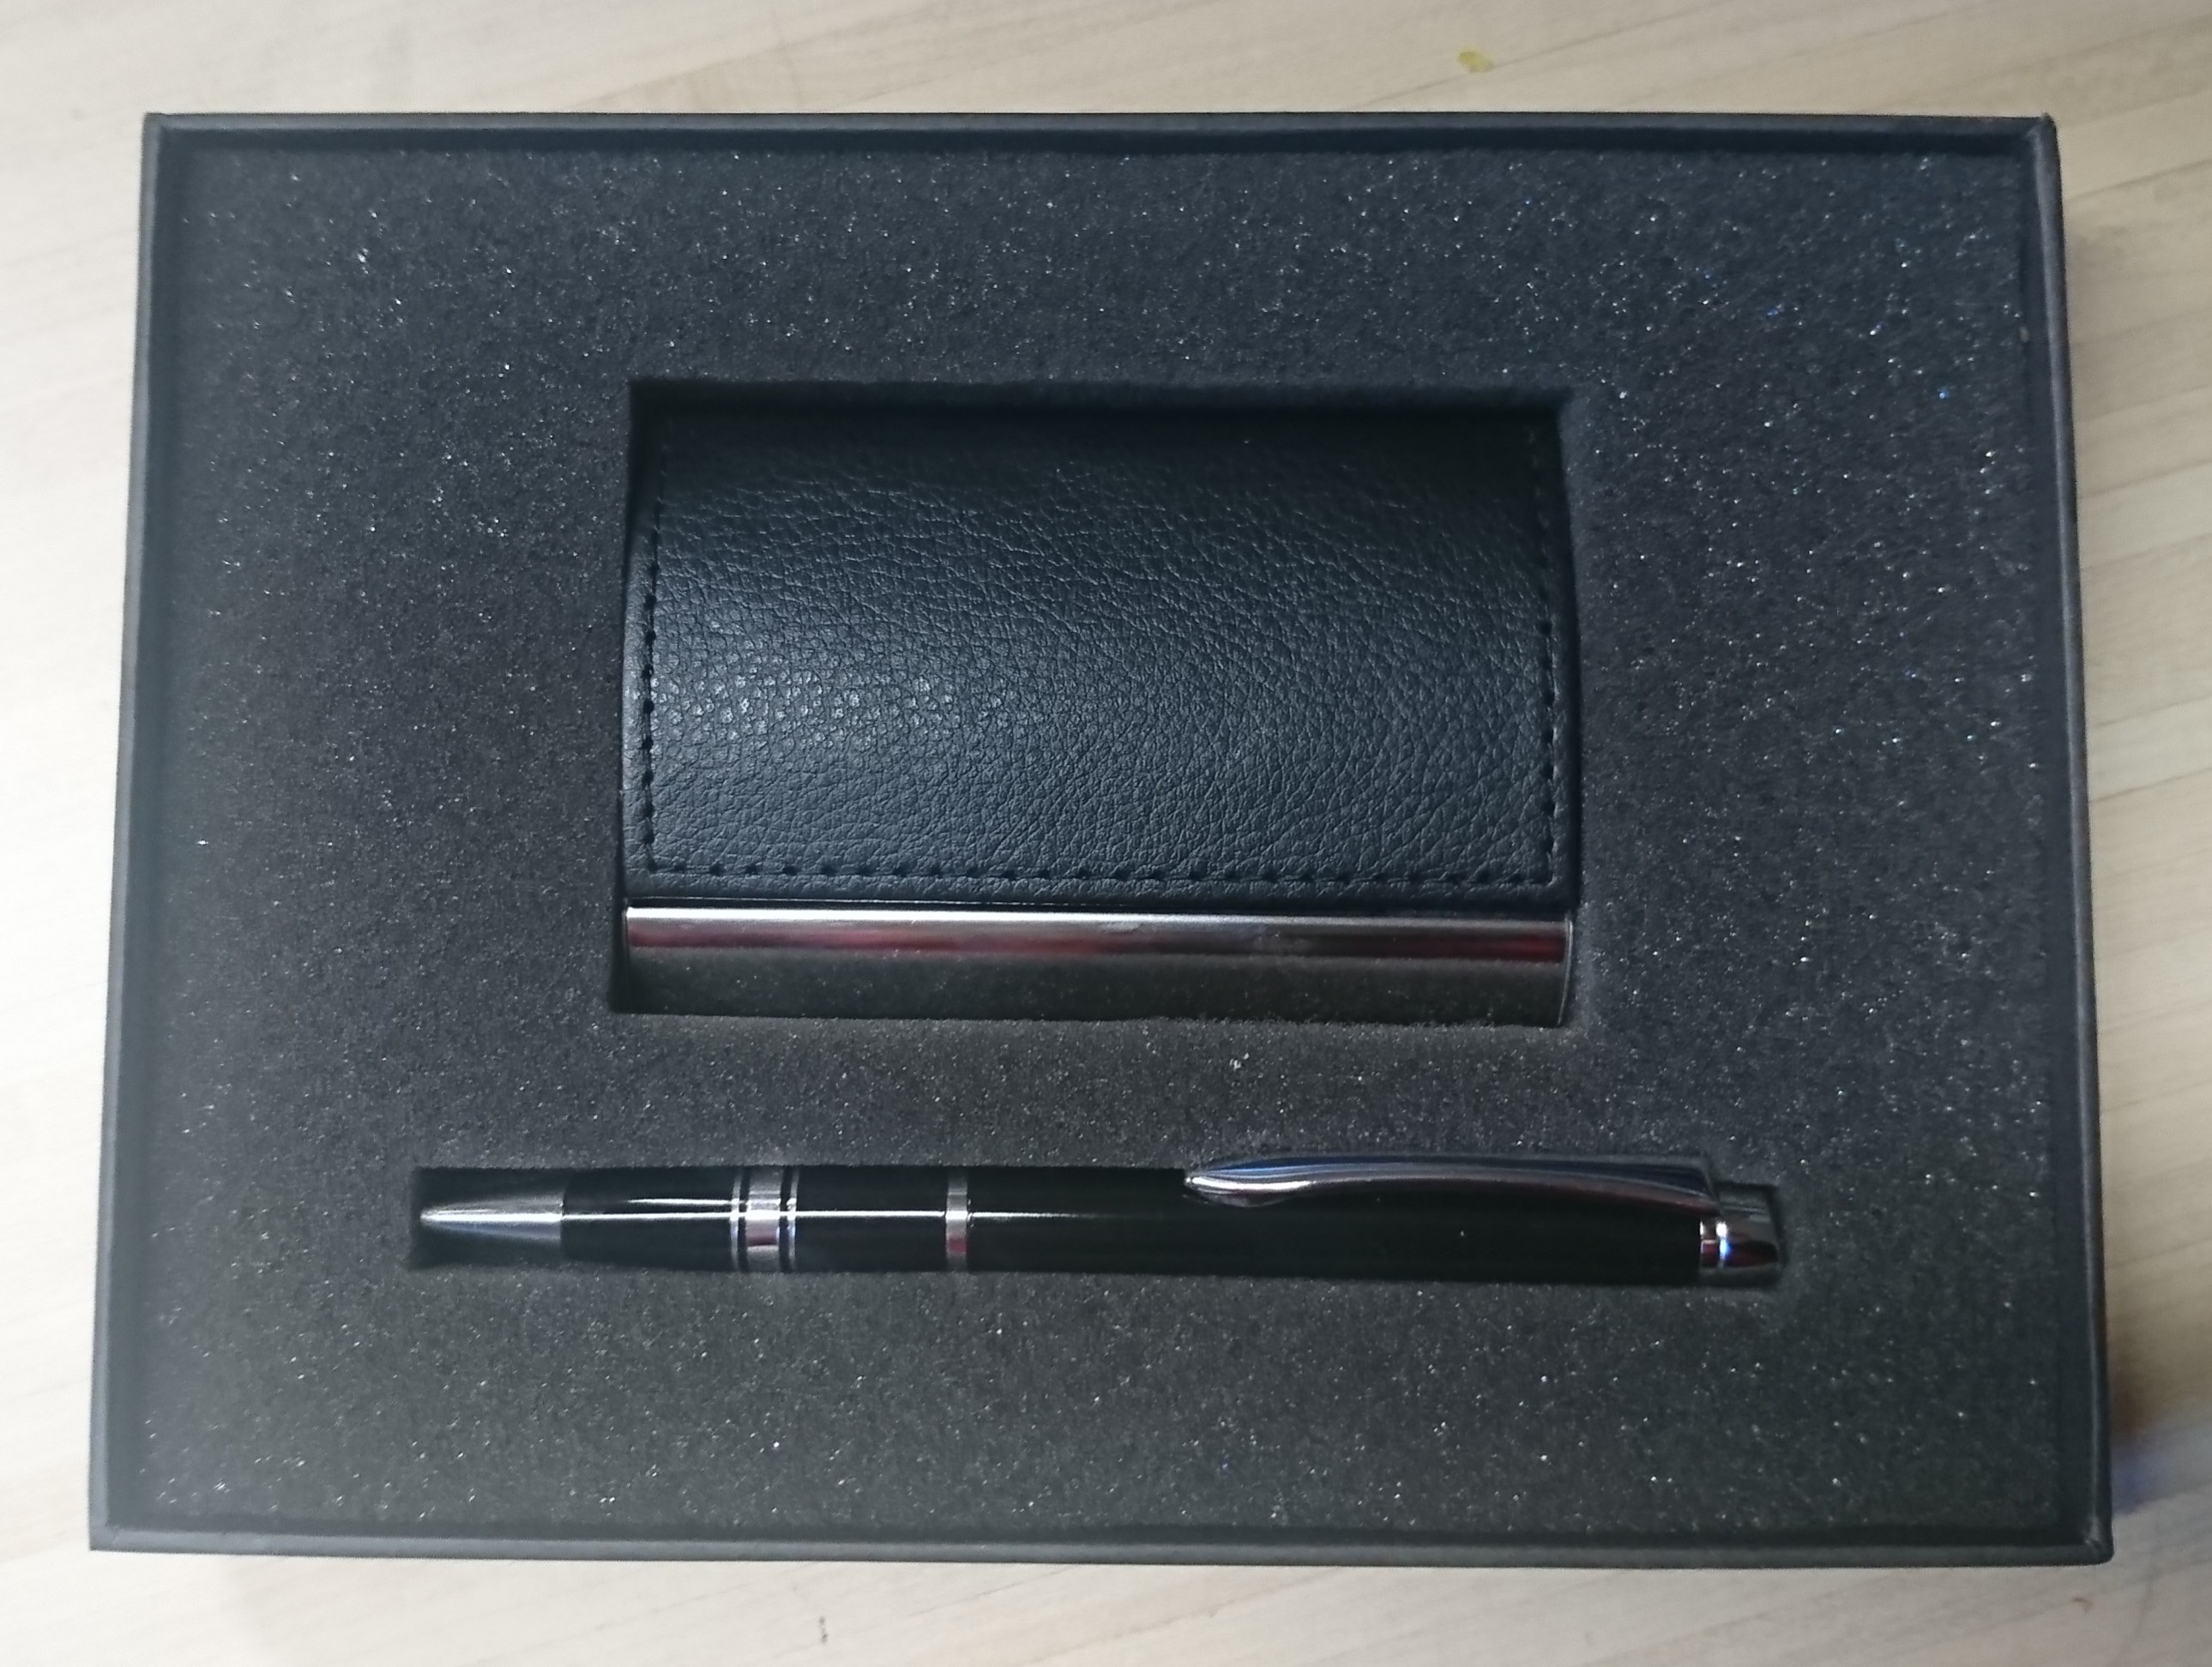 Подарочный комплект (ручка+визитница), черный